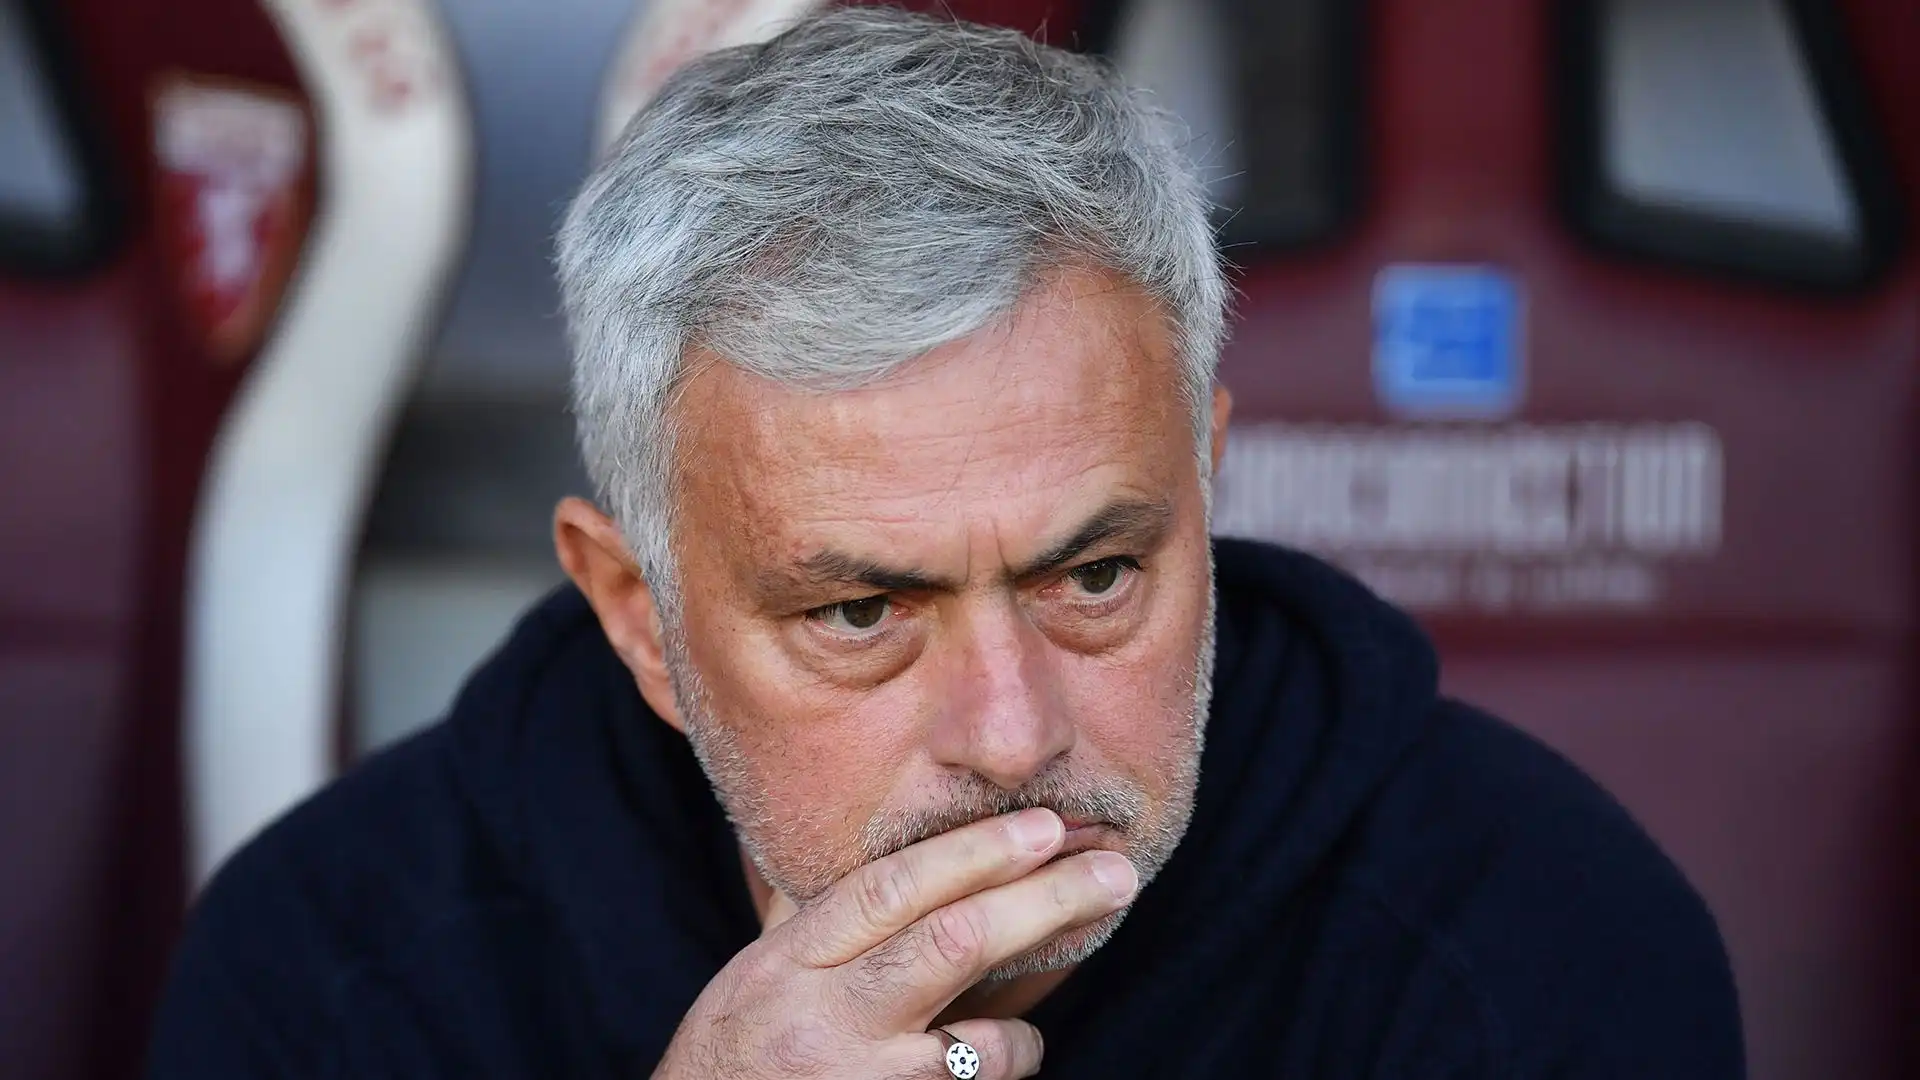 Mourinho potrebbe tornare ad allenare il Manchester United, secondo fonti inglesi